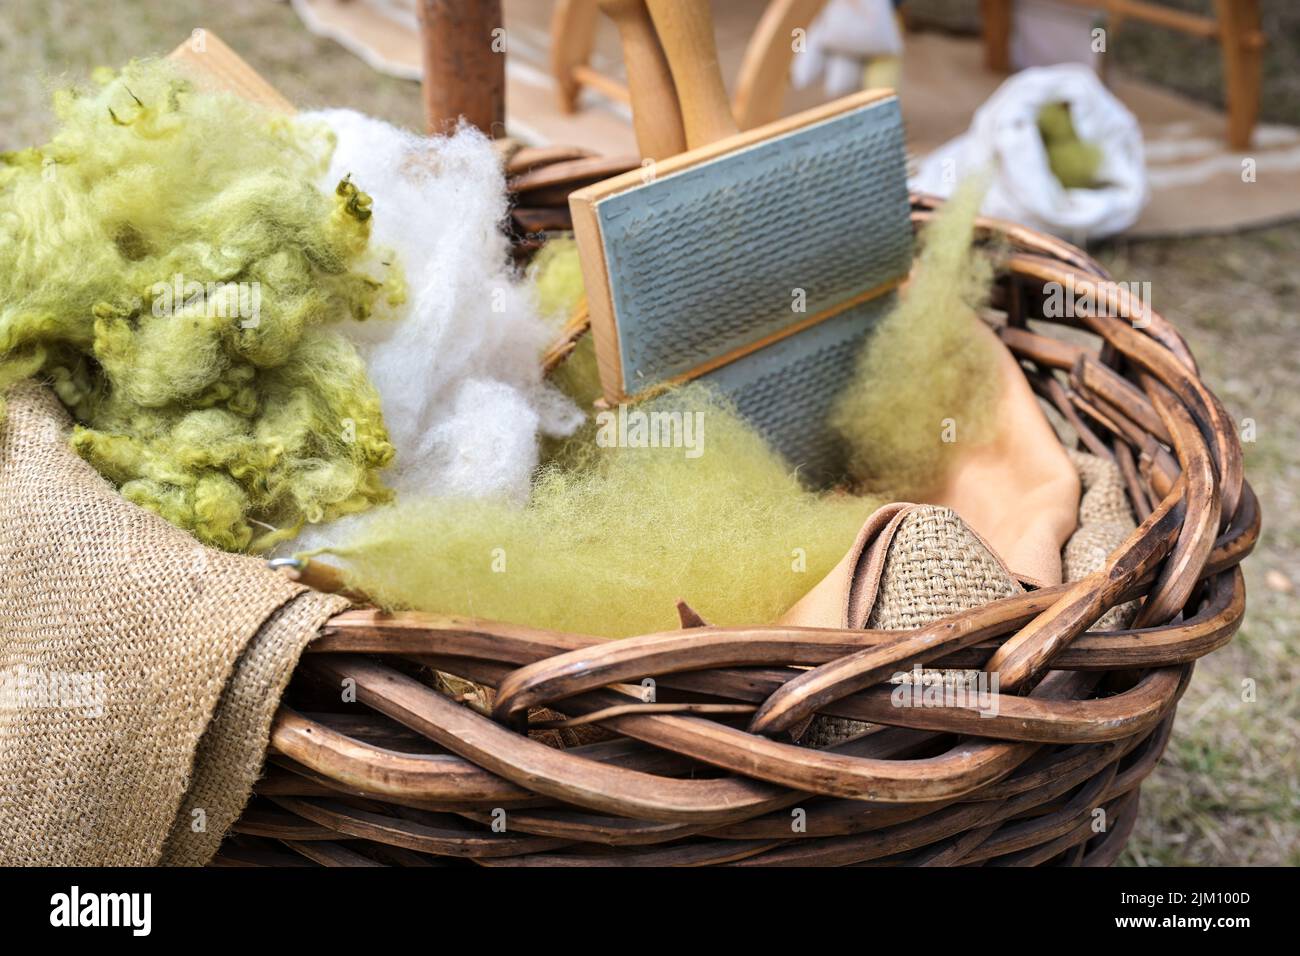 Weiße und grüne Wolle, ungepflegt und mit einer Handkarte in einem Korb brüllt, Vorbereitung zum Spinnen, ausgewählter Fokus, enge Schärfentiefe Stockfoto